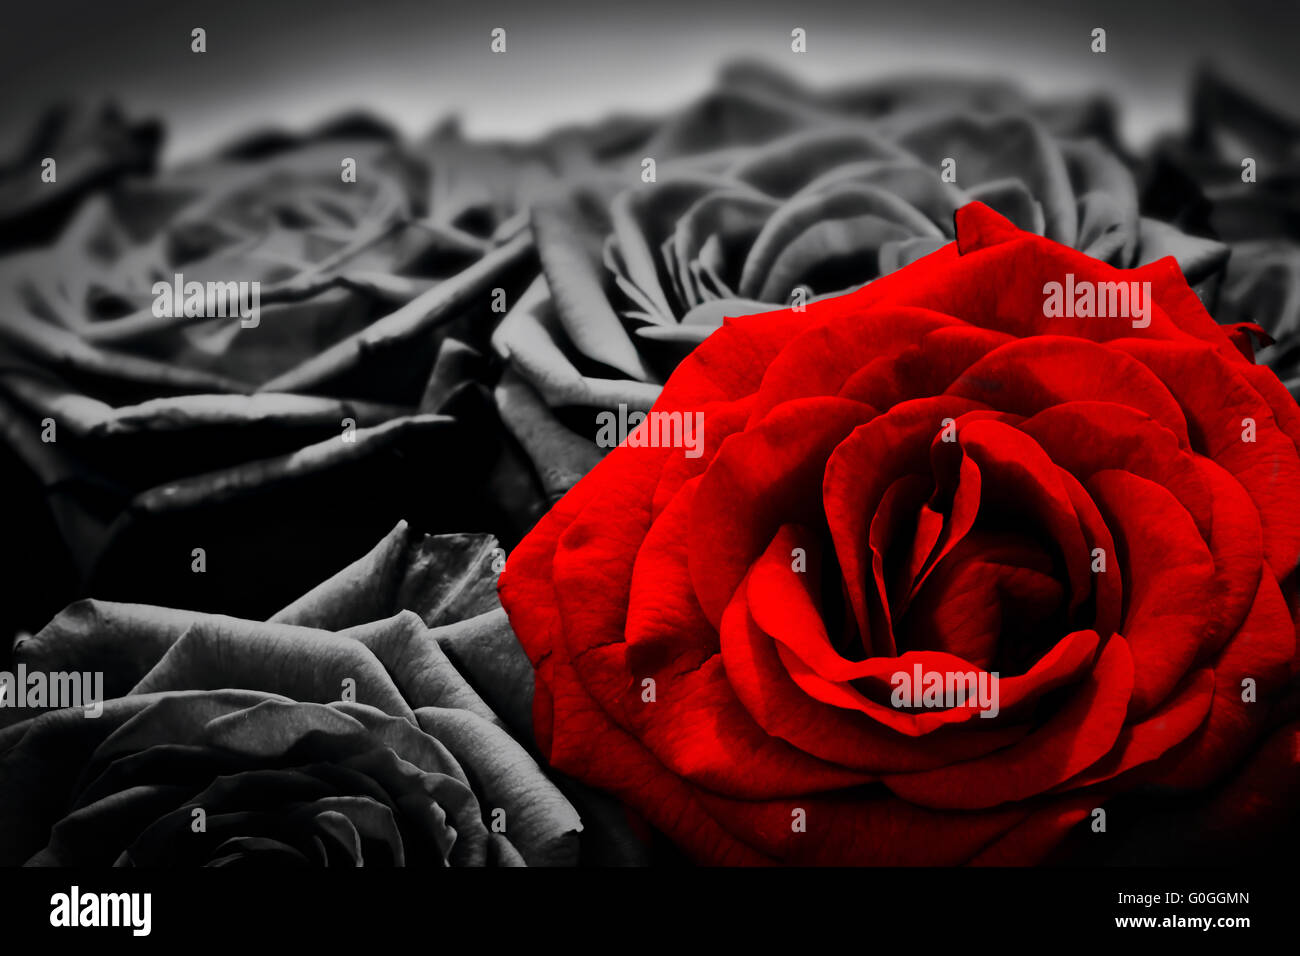 Romantische Grußkarte rote rose gegen schwarze und weiße Rosen Stockfoto